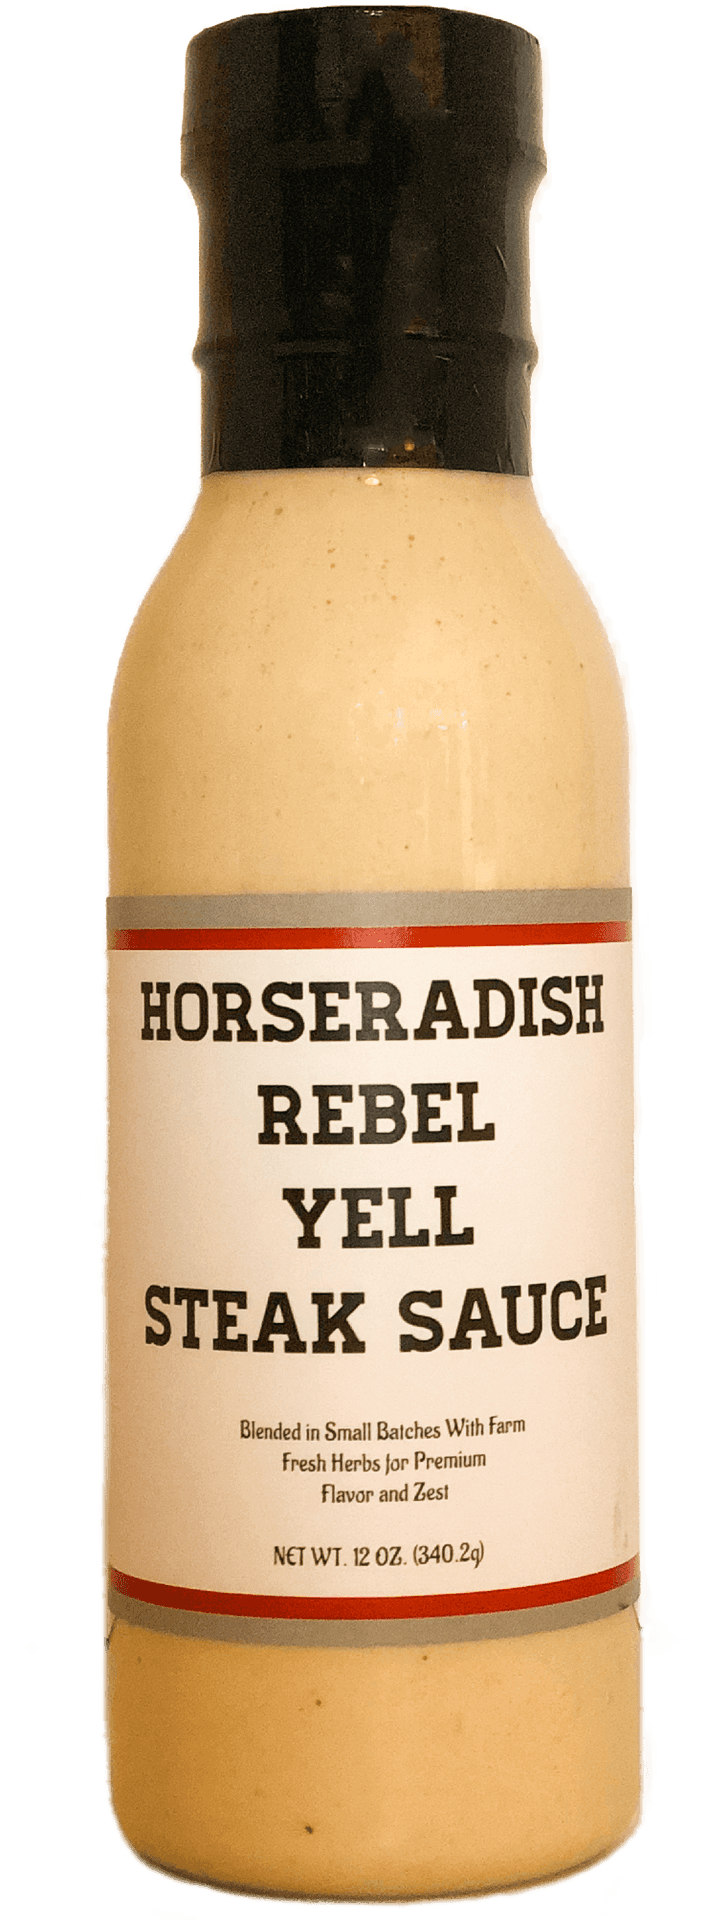 Horseradish Rebel Yell Steak Sauce Bottle PNG